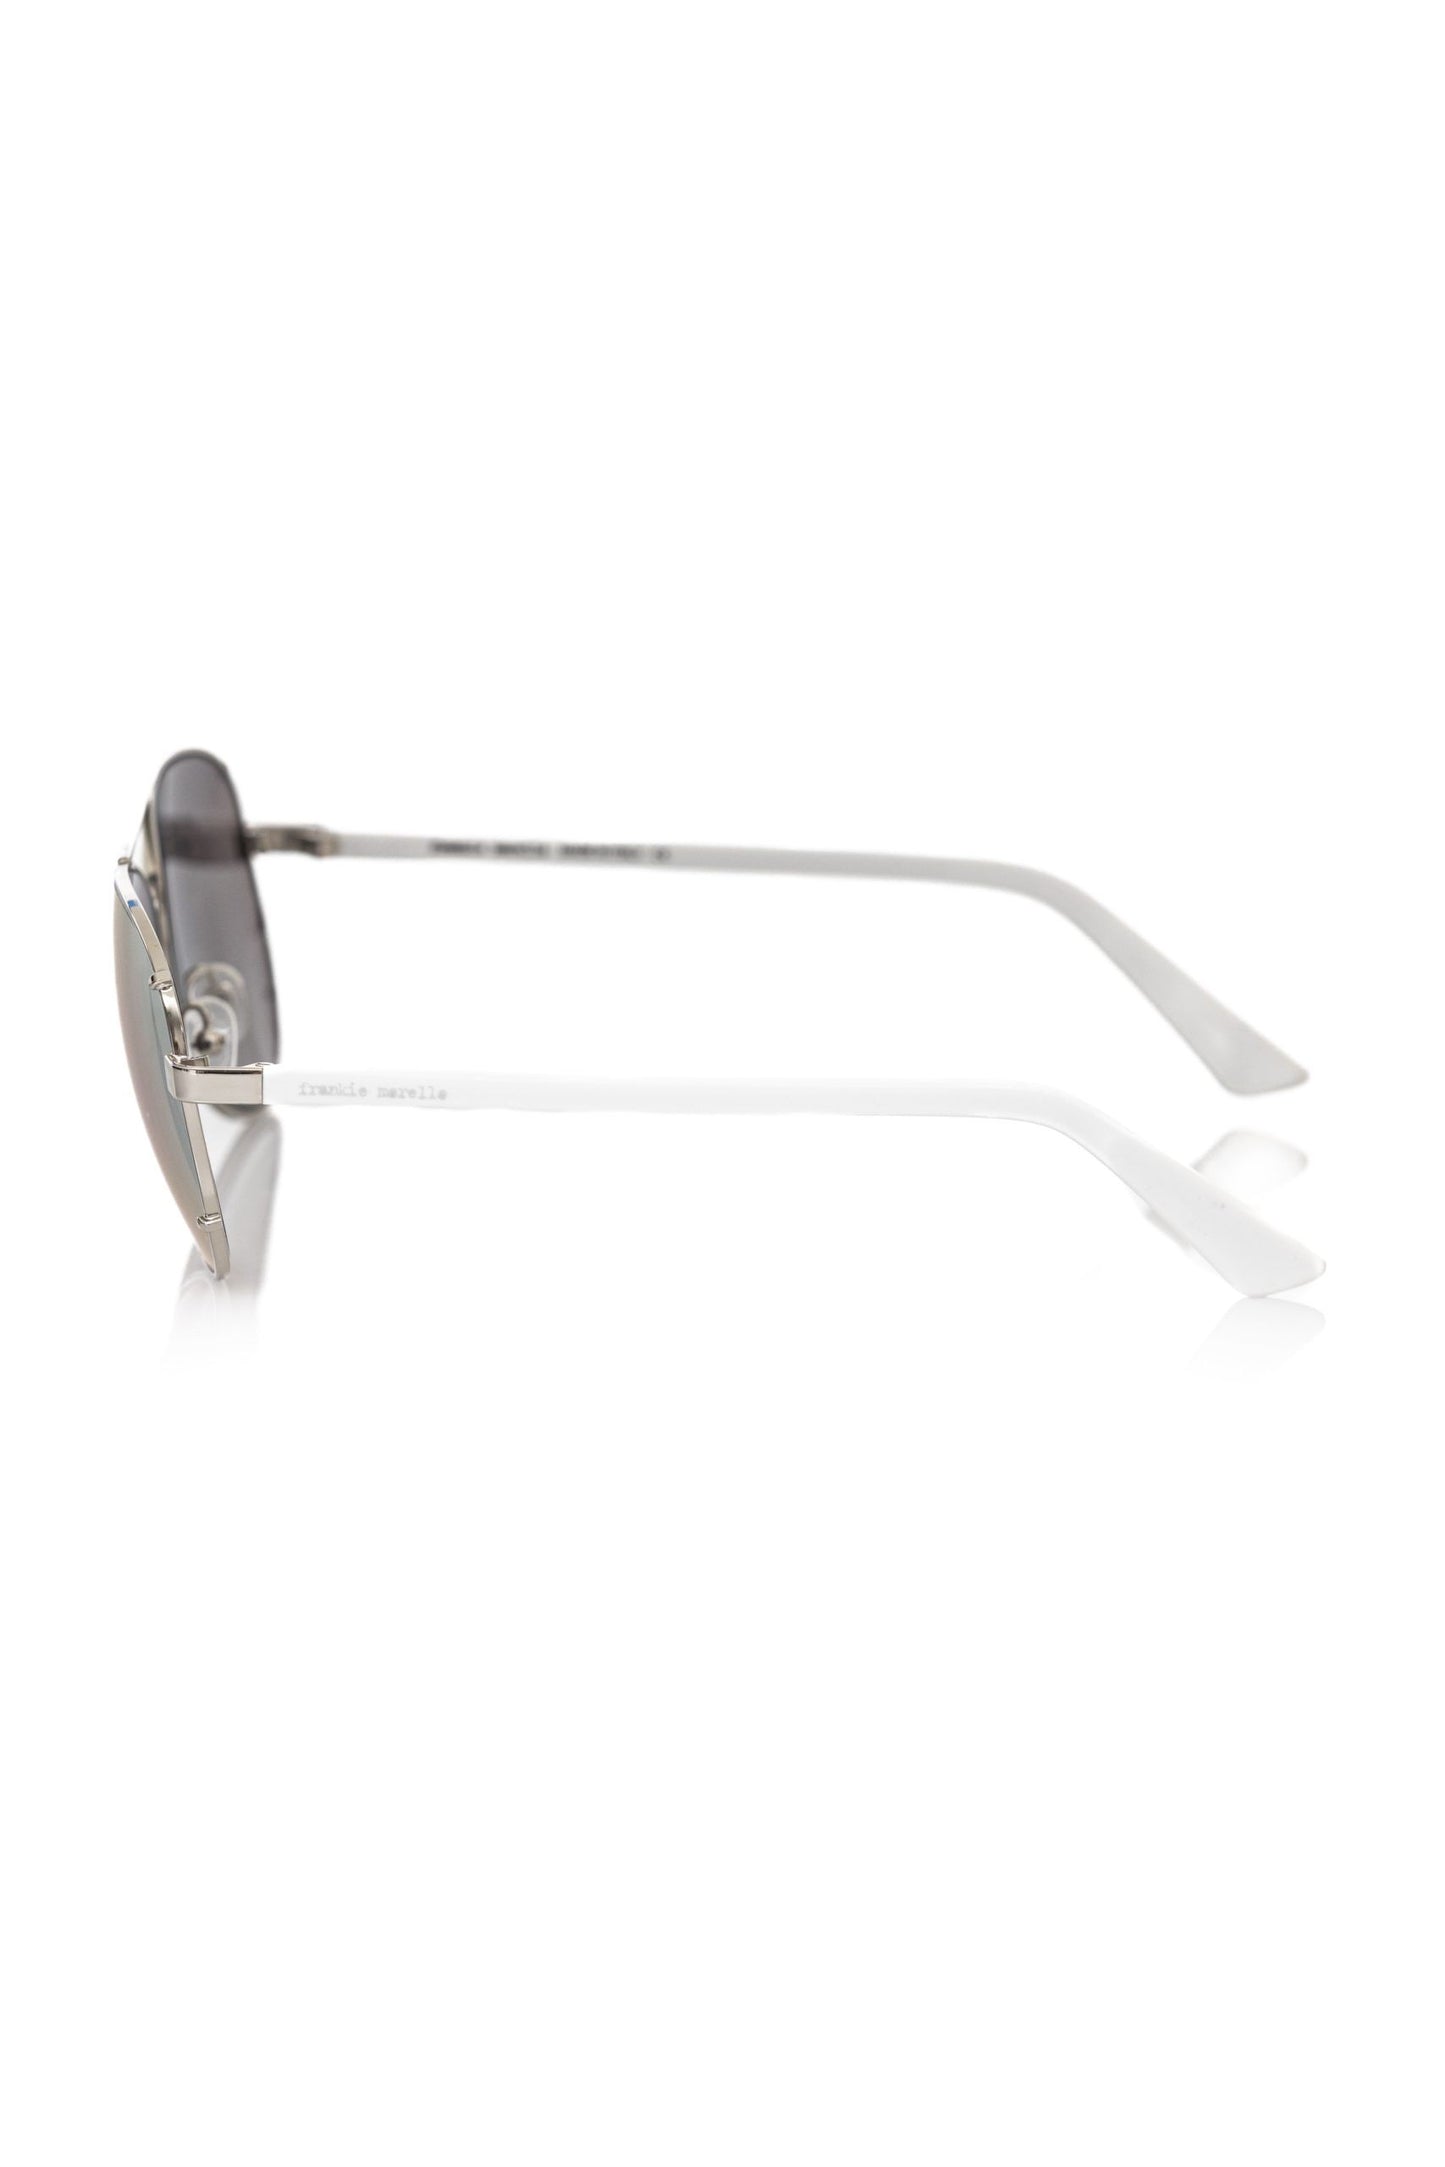 Frankie Morello Elegant Aviator Eyewear with Smoked Lenses